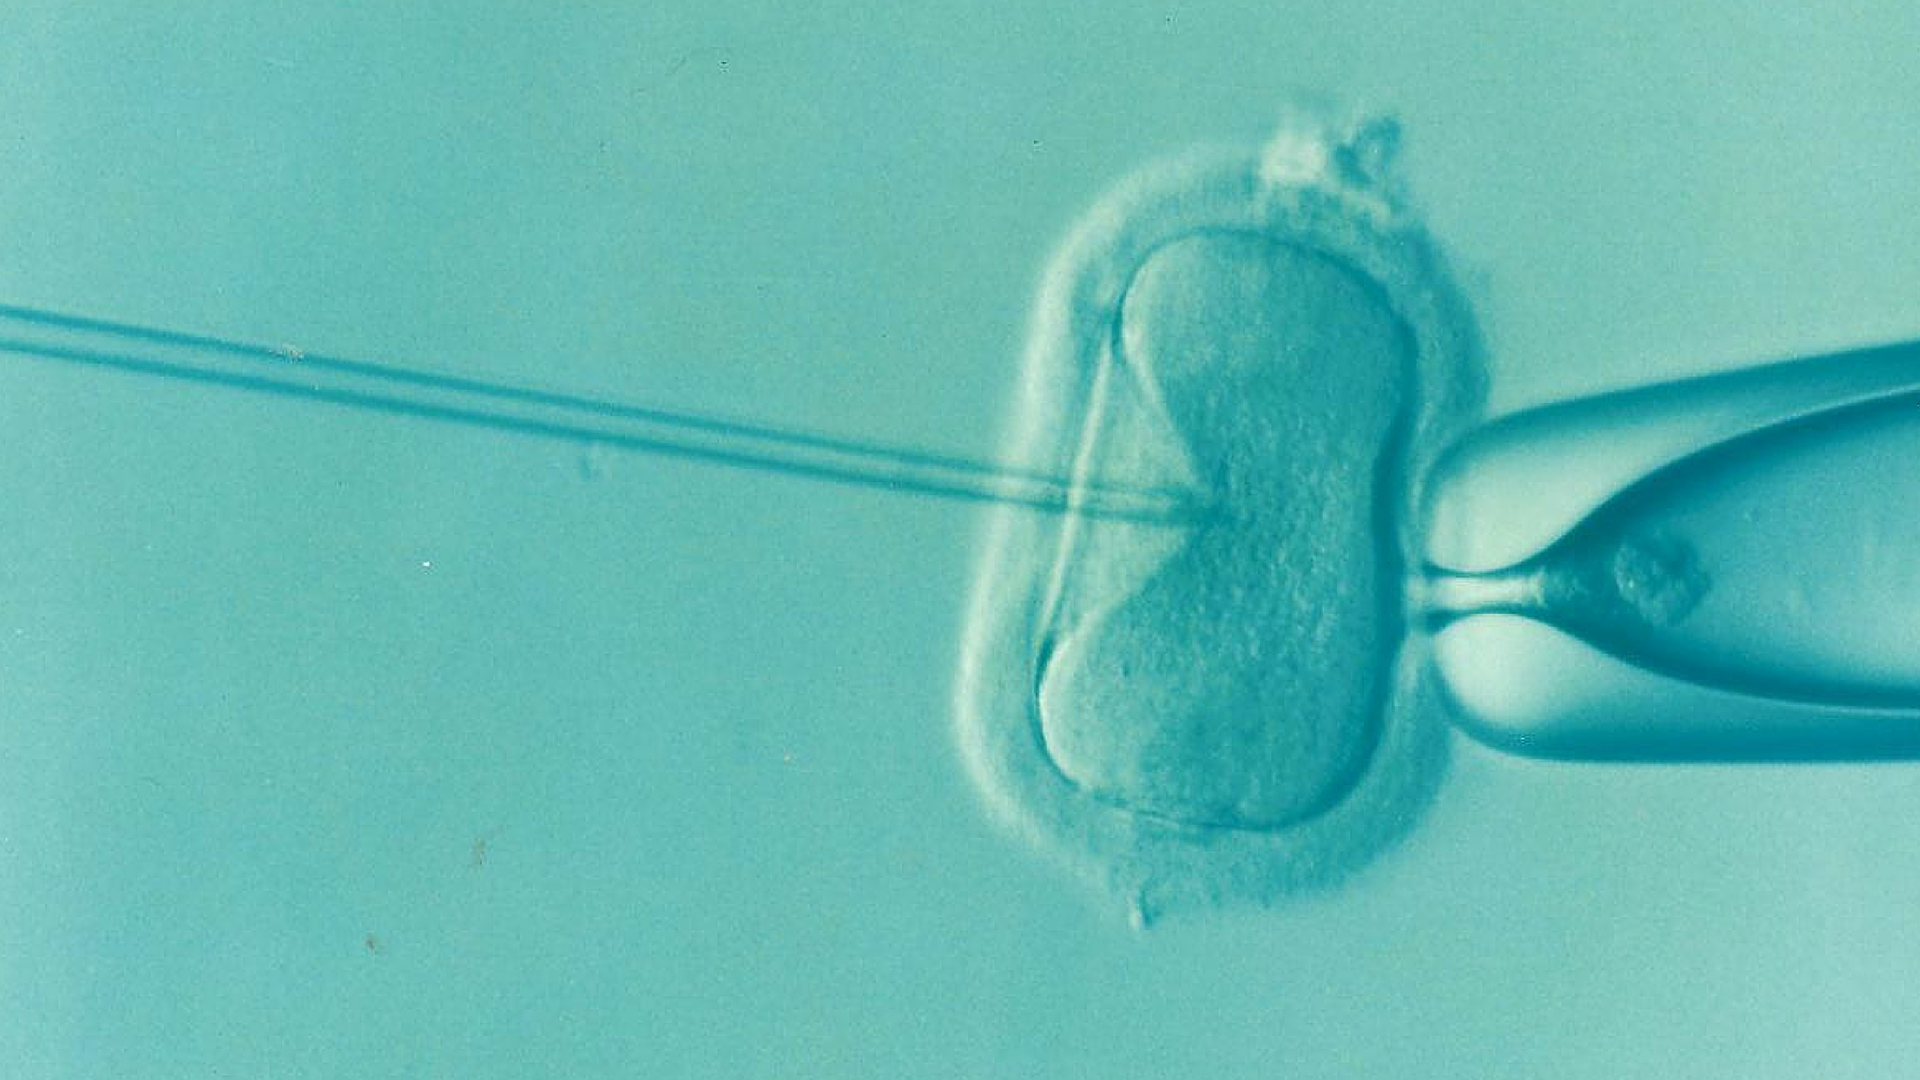 IVF scientific image